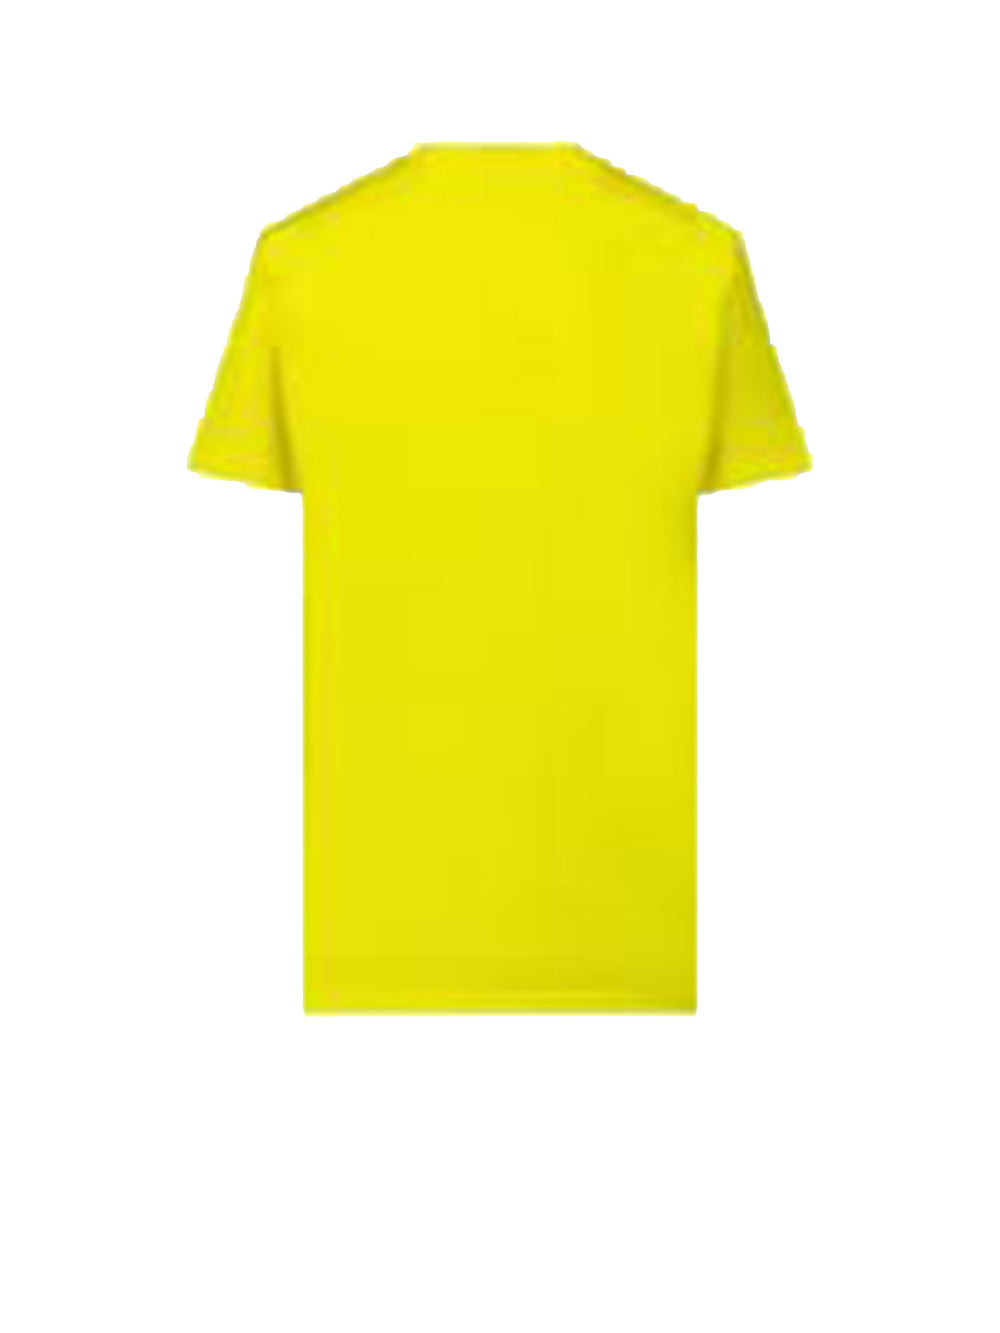 T-shirt Unisex Ragazzo Giallo in cotone con stampa frontale